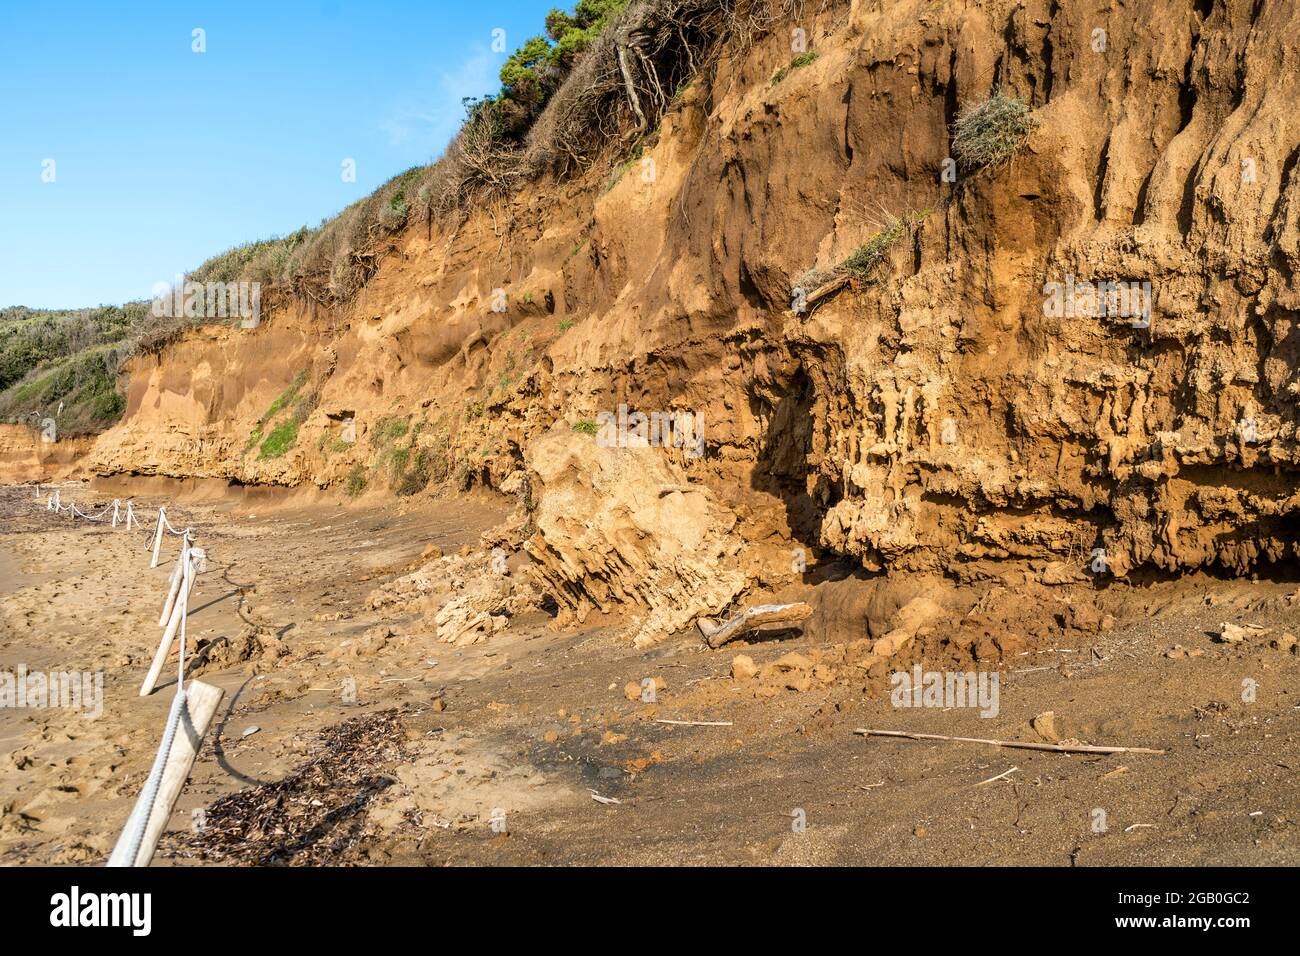 Erosione costiera nella spiaggia del Golfo di Baratti, nel comune di Piombino, lungo la Costa degli Etruschi, provincia di Livorno, Toscana, Italia Foto Stock